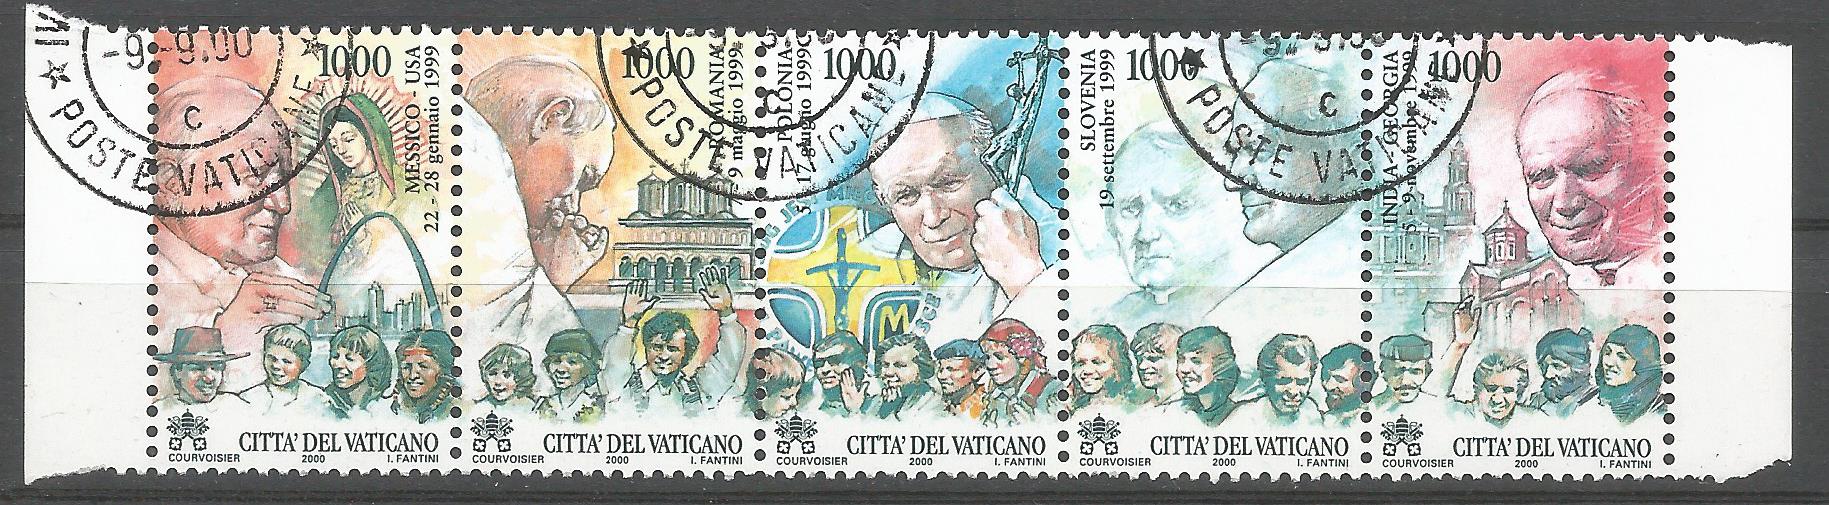 51729 - VATICANO - 2000 - Viaggi del Papa Giovanni Paolo II - 5 val. timbrati - Unificato 1219/23 - VTC151